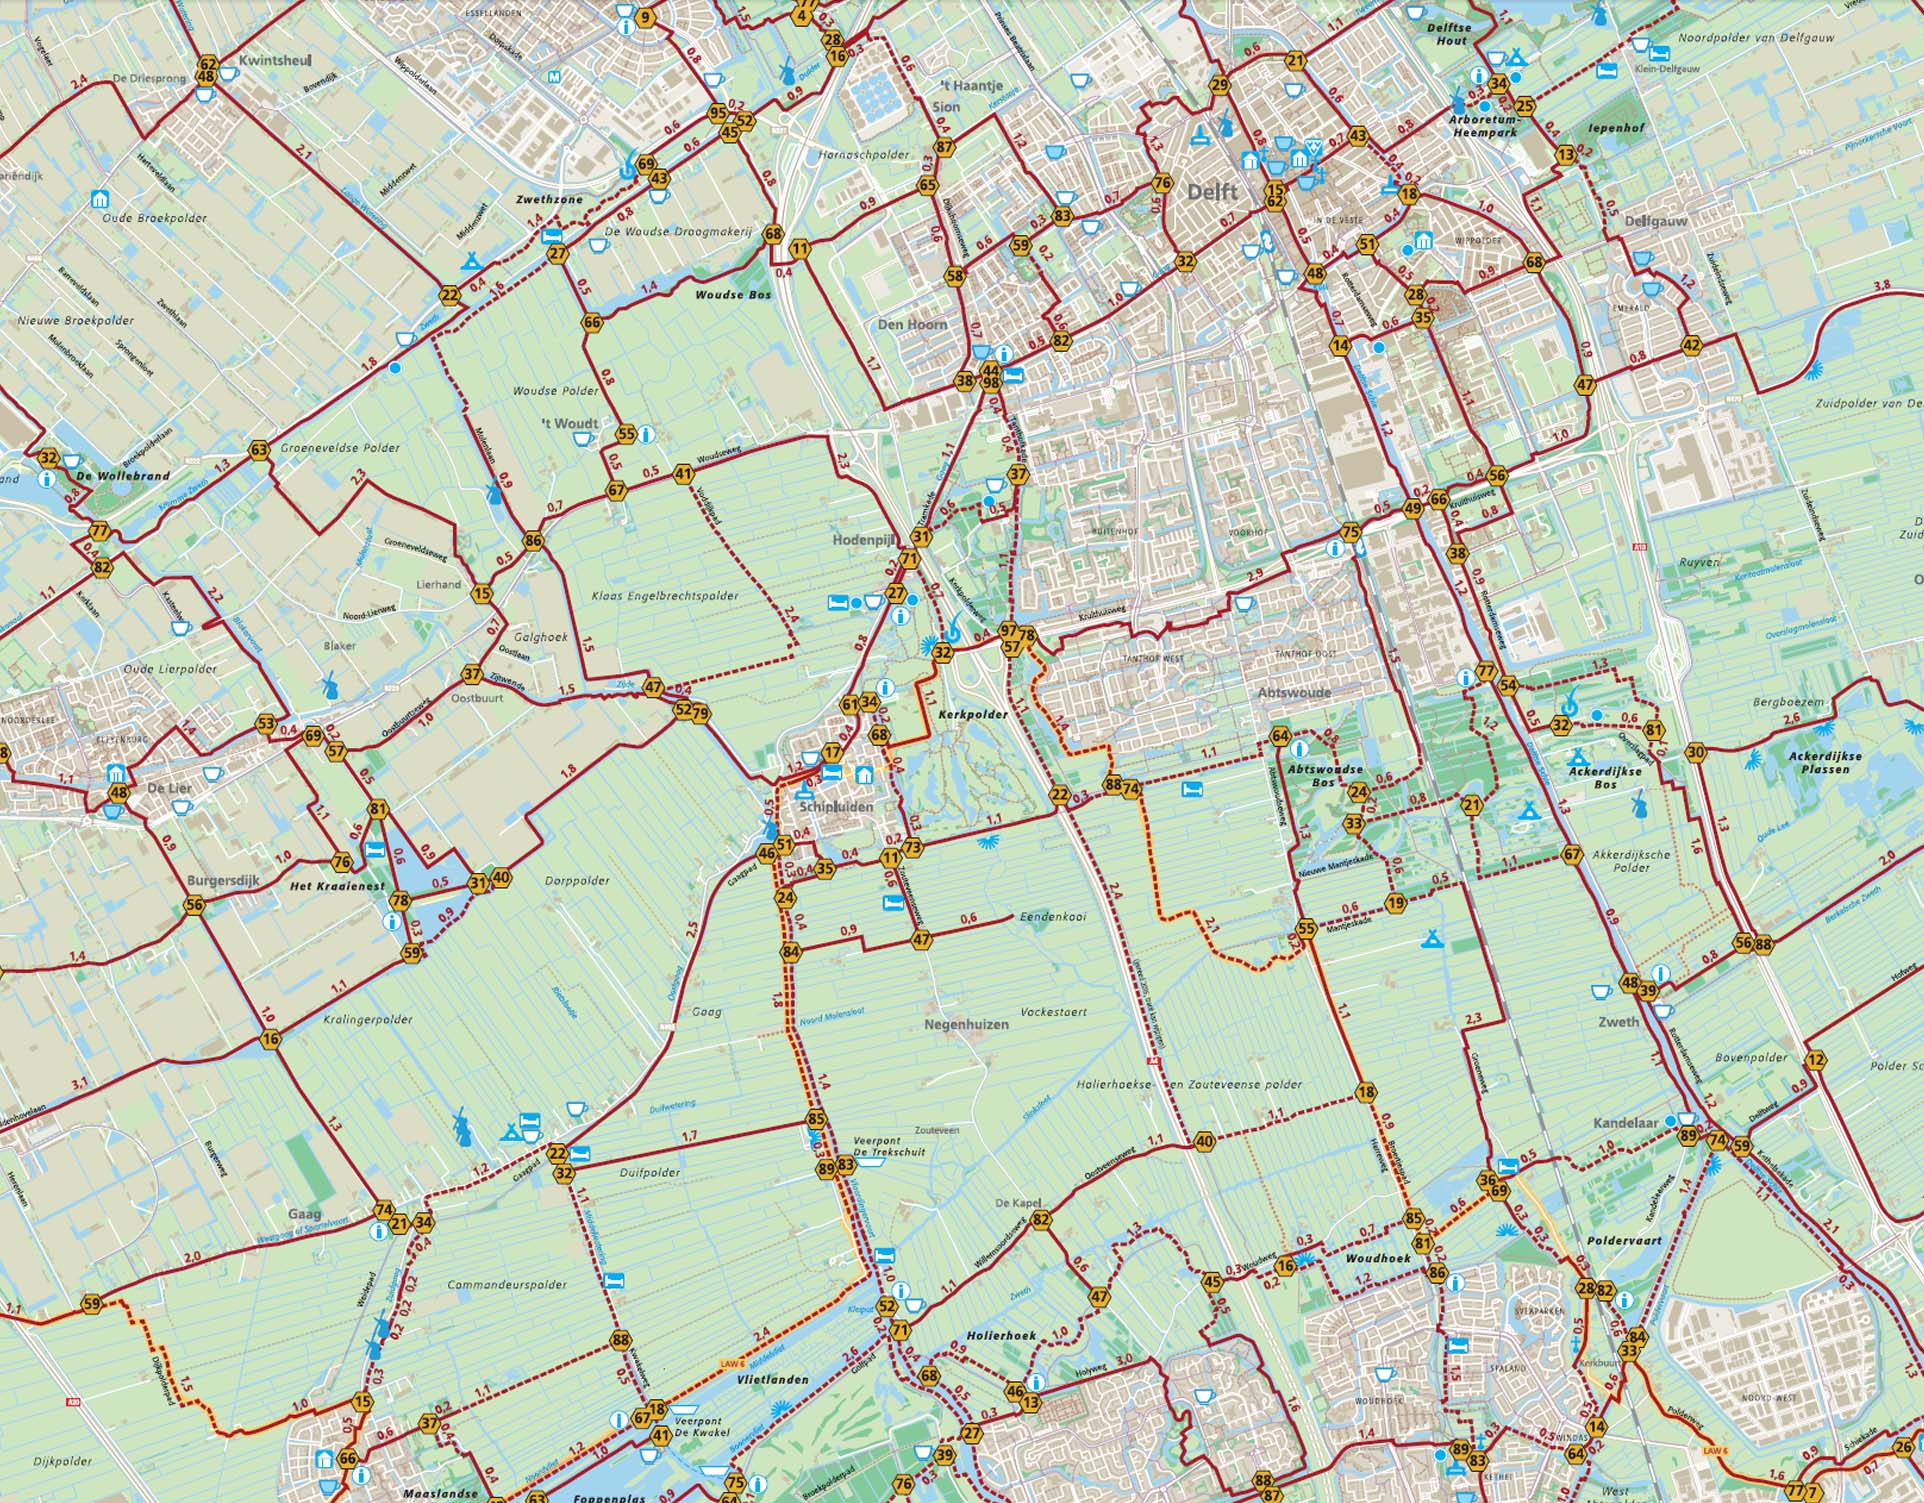 Wandelroutenetwerk, detail Midden-Delfland